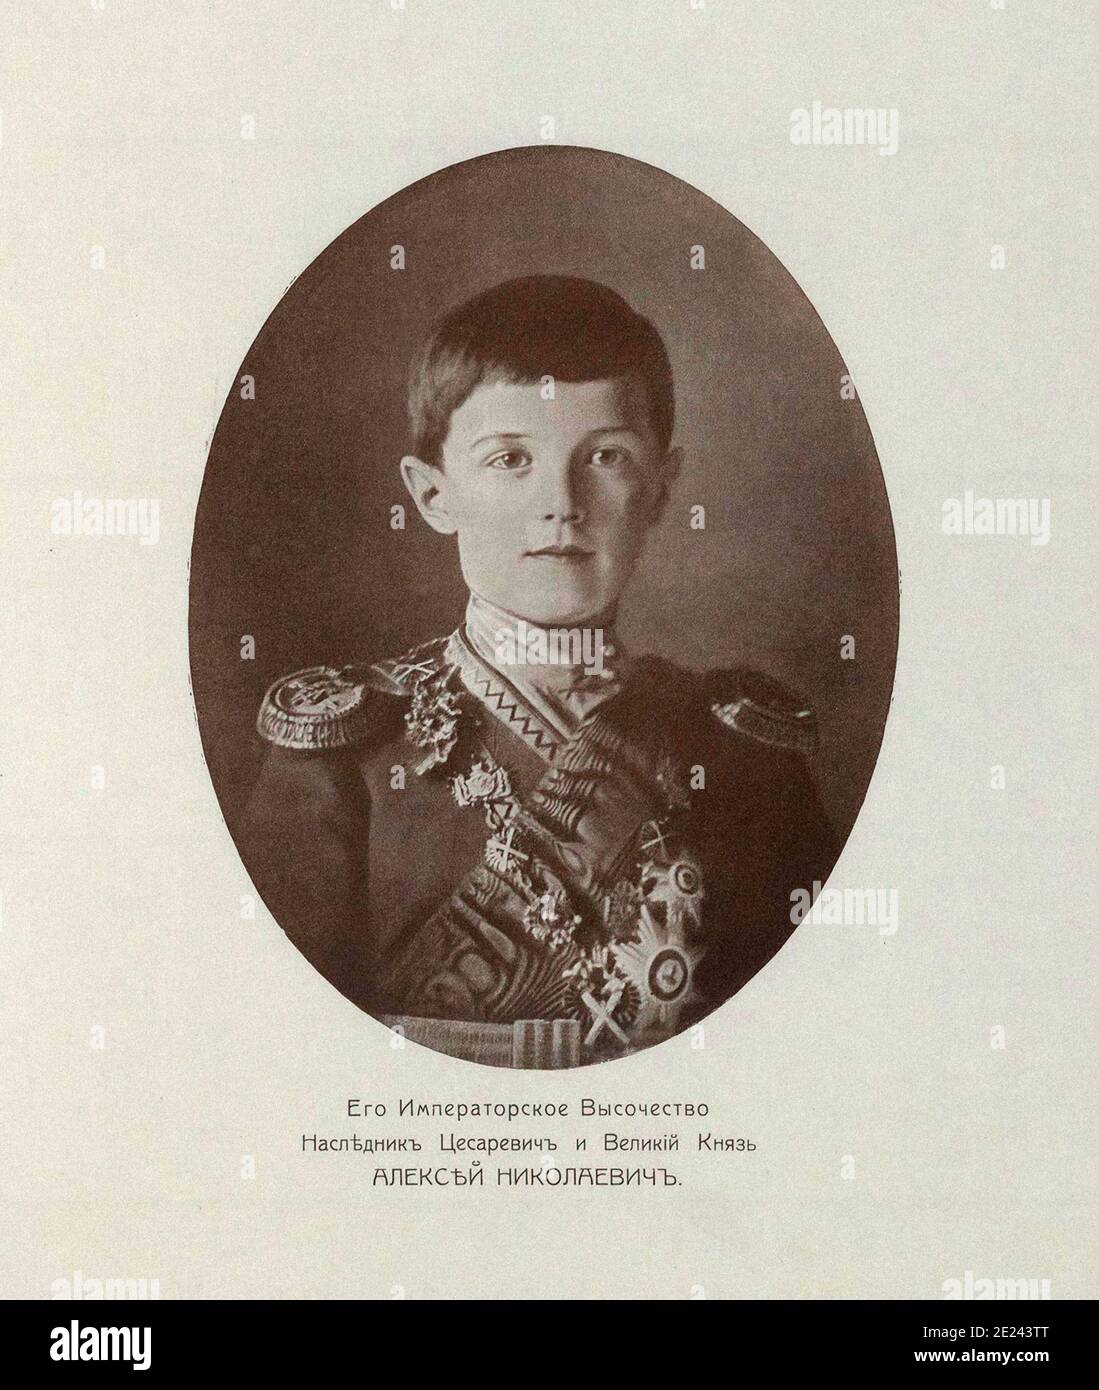 Alexei Nikolaevich (1904 - 1918) della casa di Romanov, era l'ultimo Tsesarevich e apparente erede al trono dell'impero russo. Egli era il Foto Stock